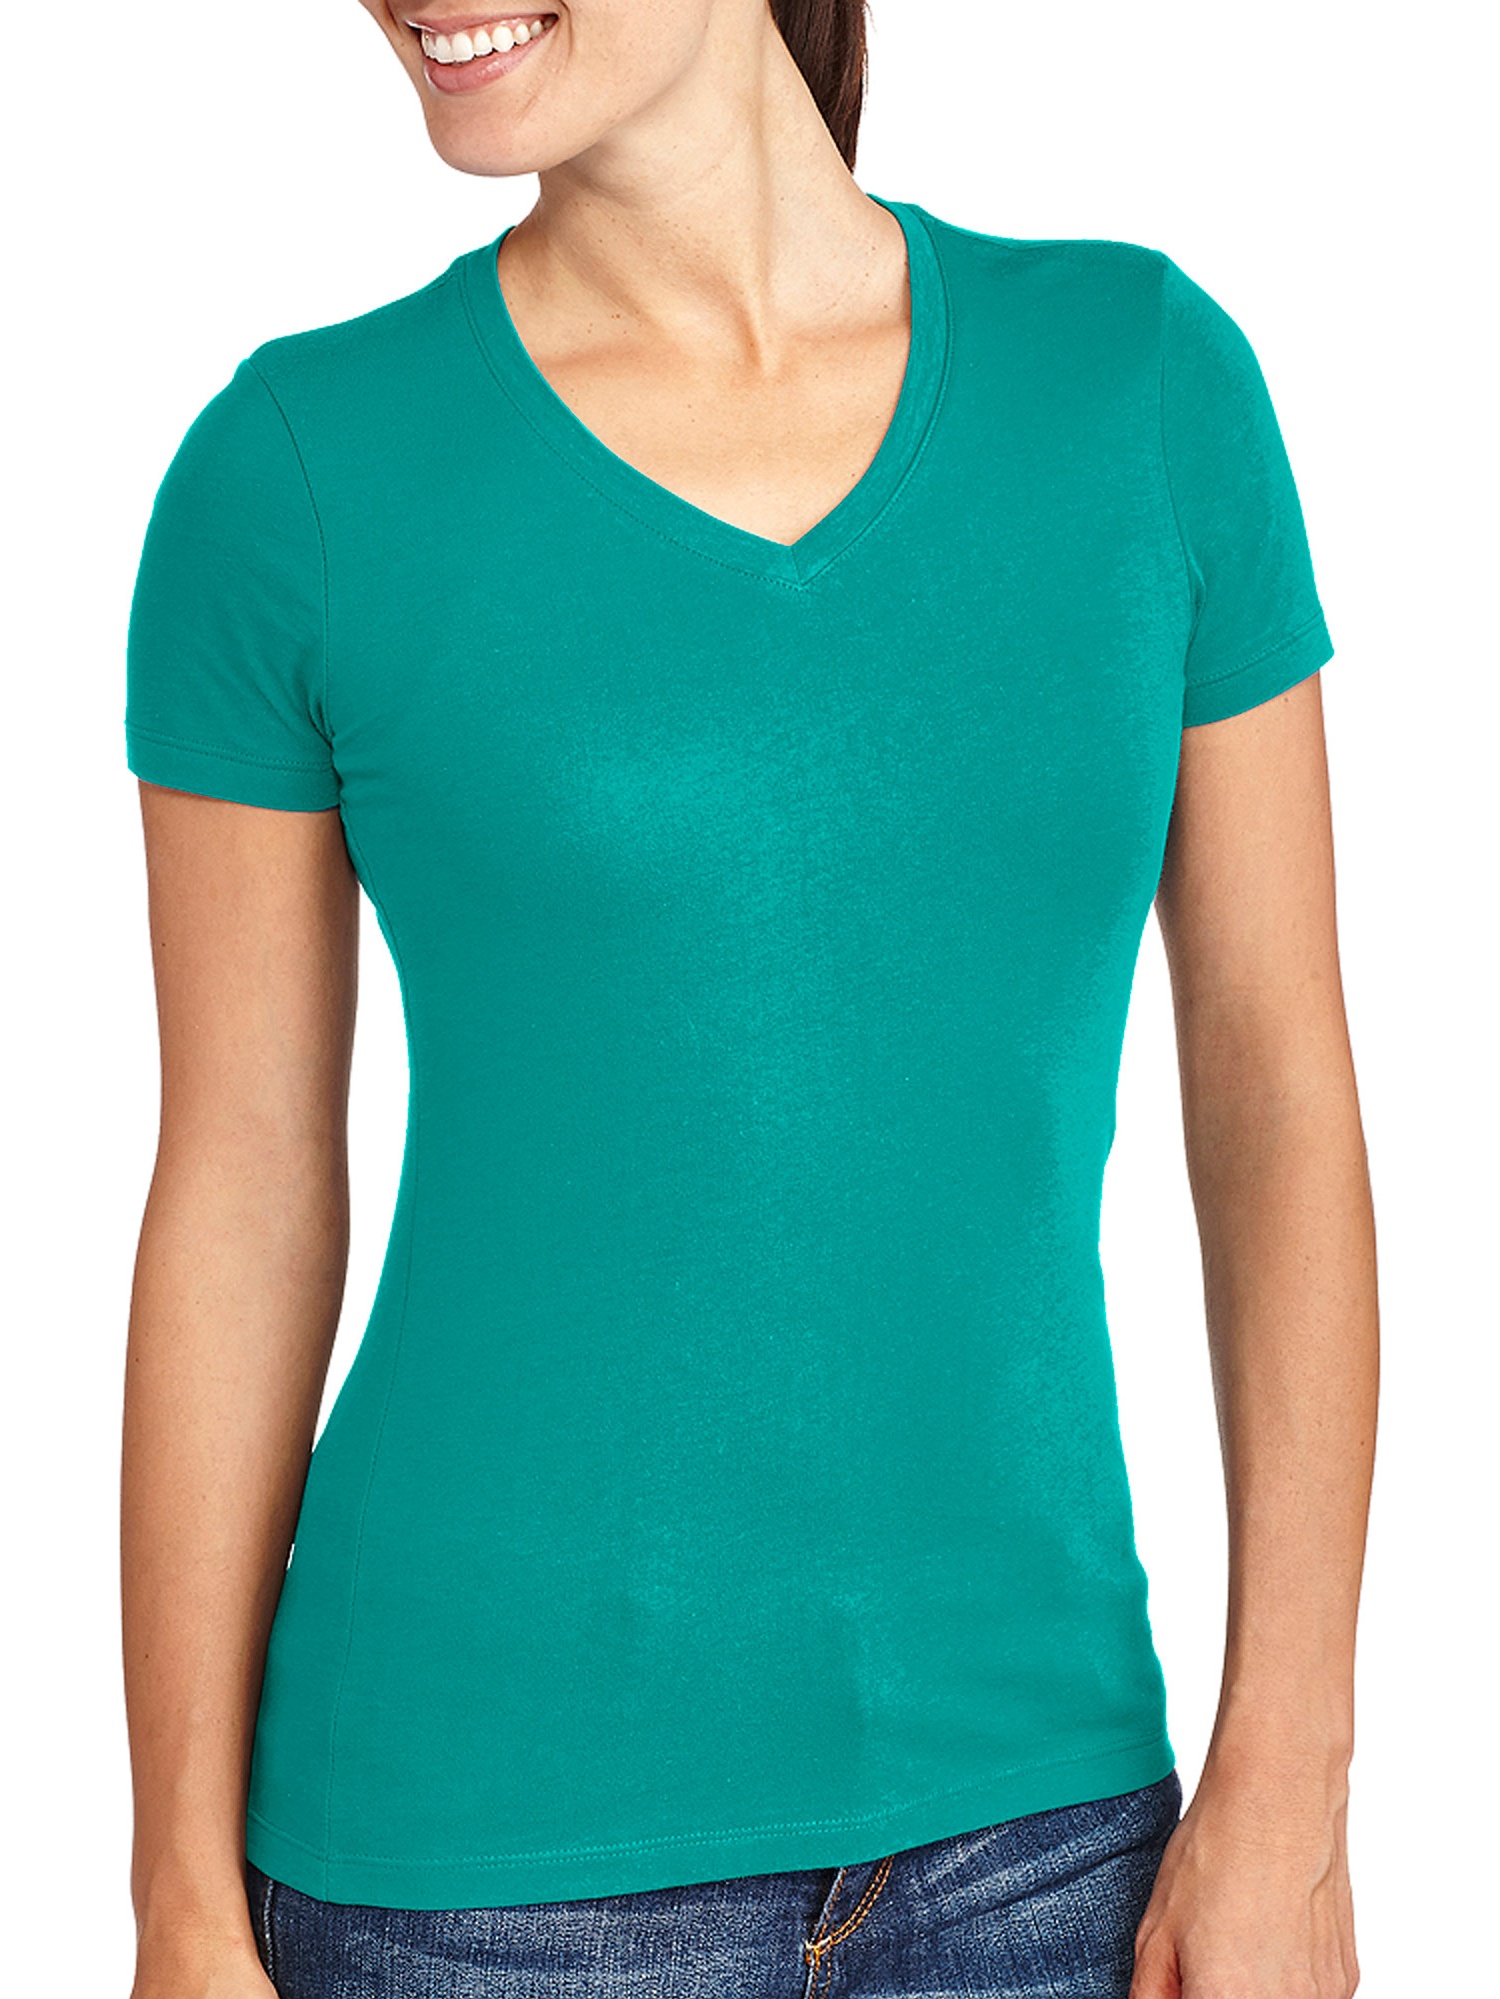 Women's V-Neck T-Shirt - image 1 of 1